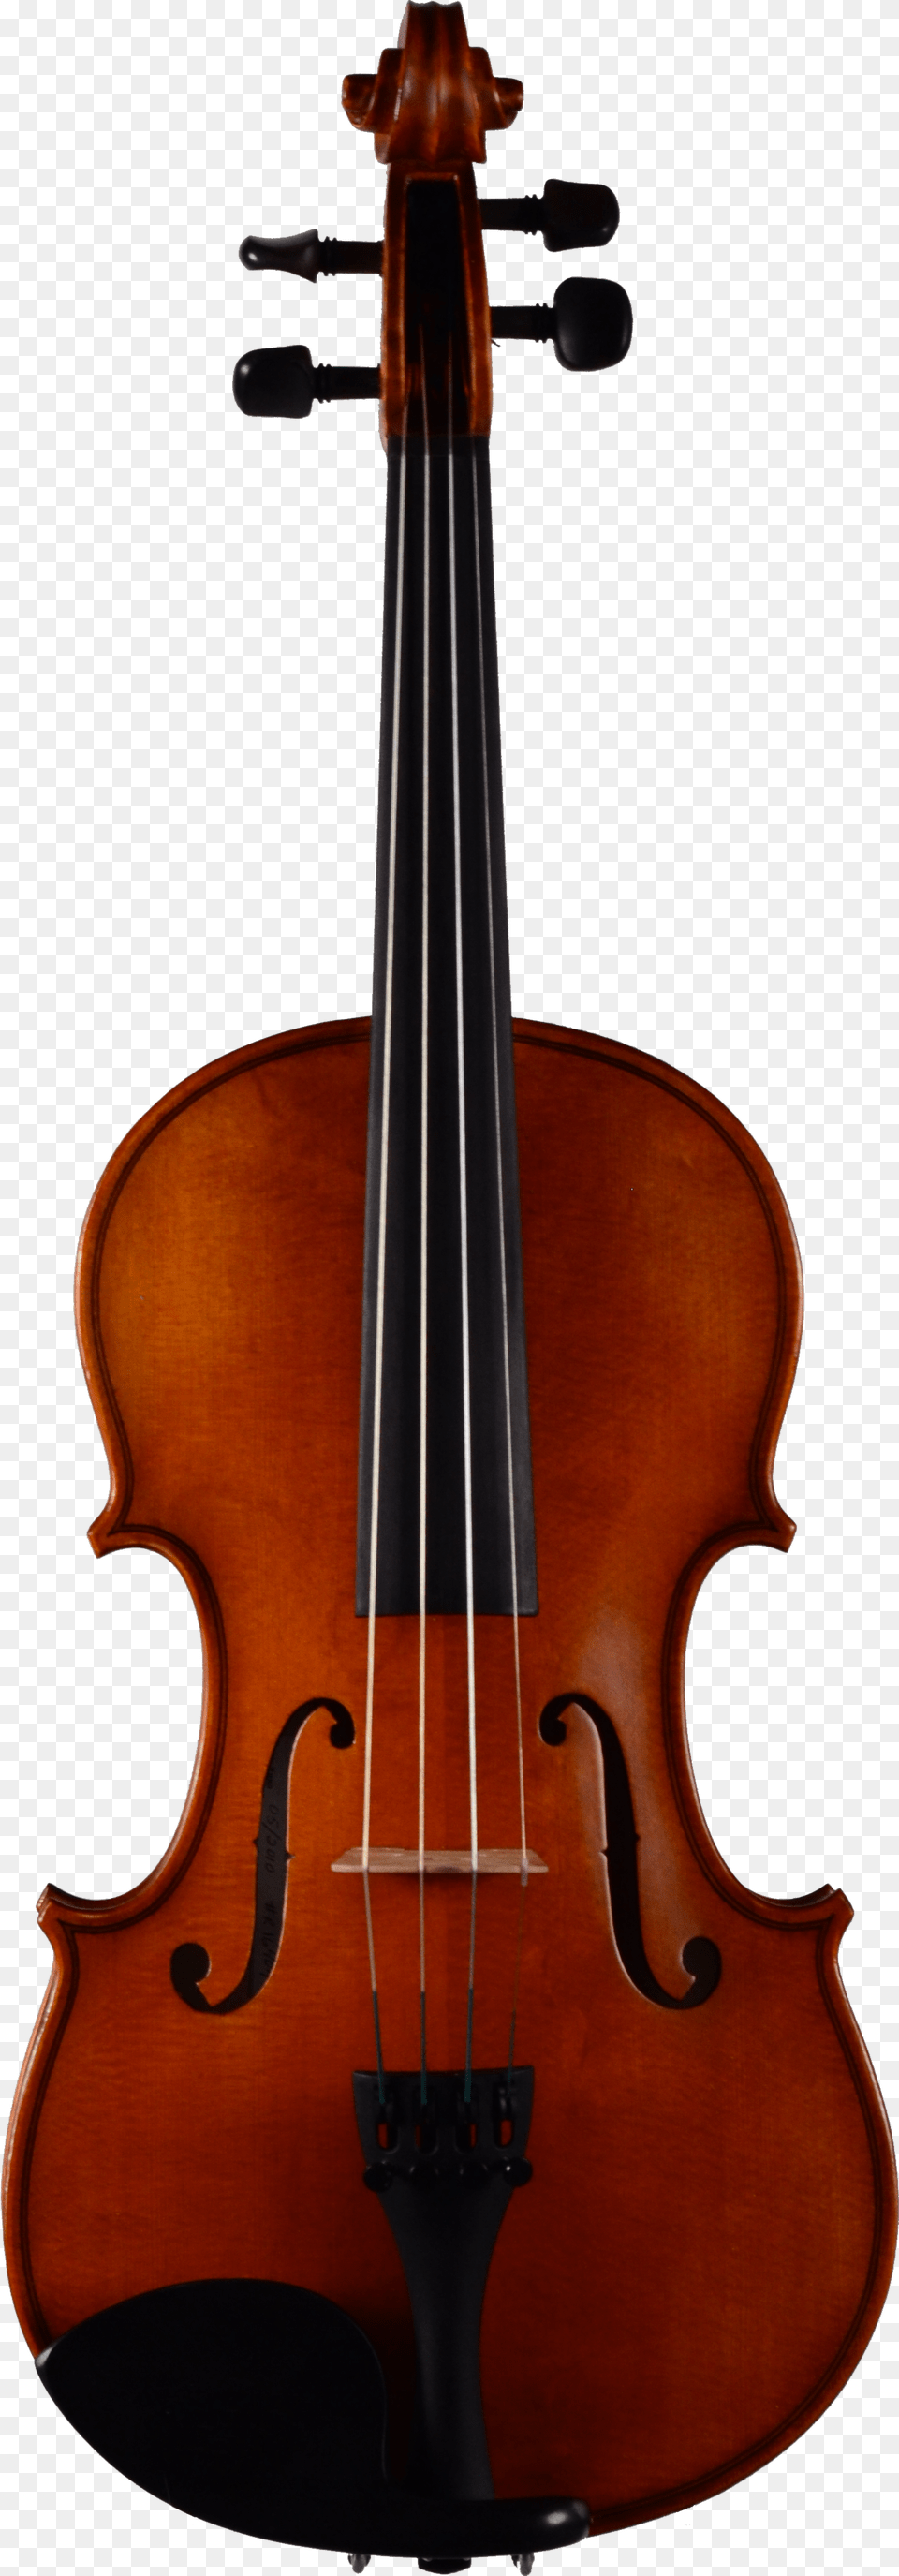 Violin Lord Wilton Guarneri Del Gesu, Musical Instrument, Cello Png